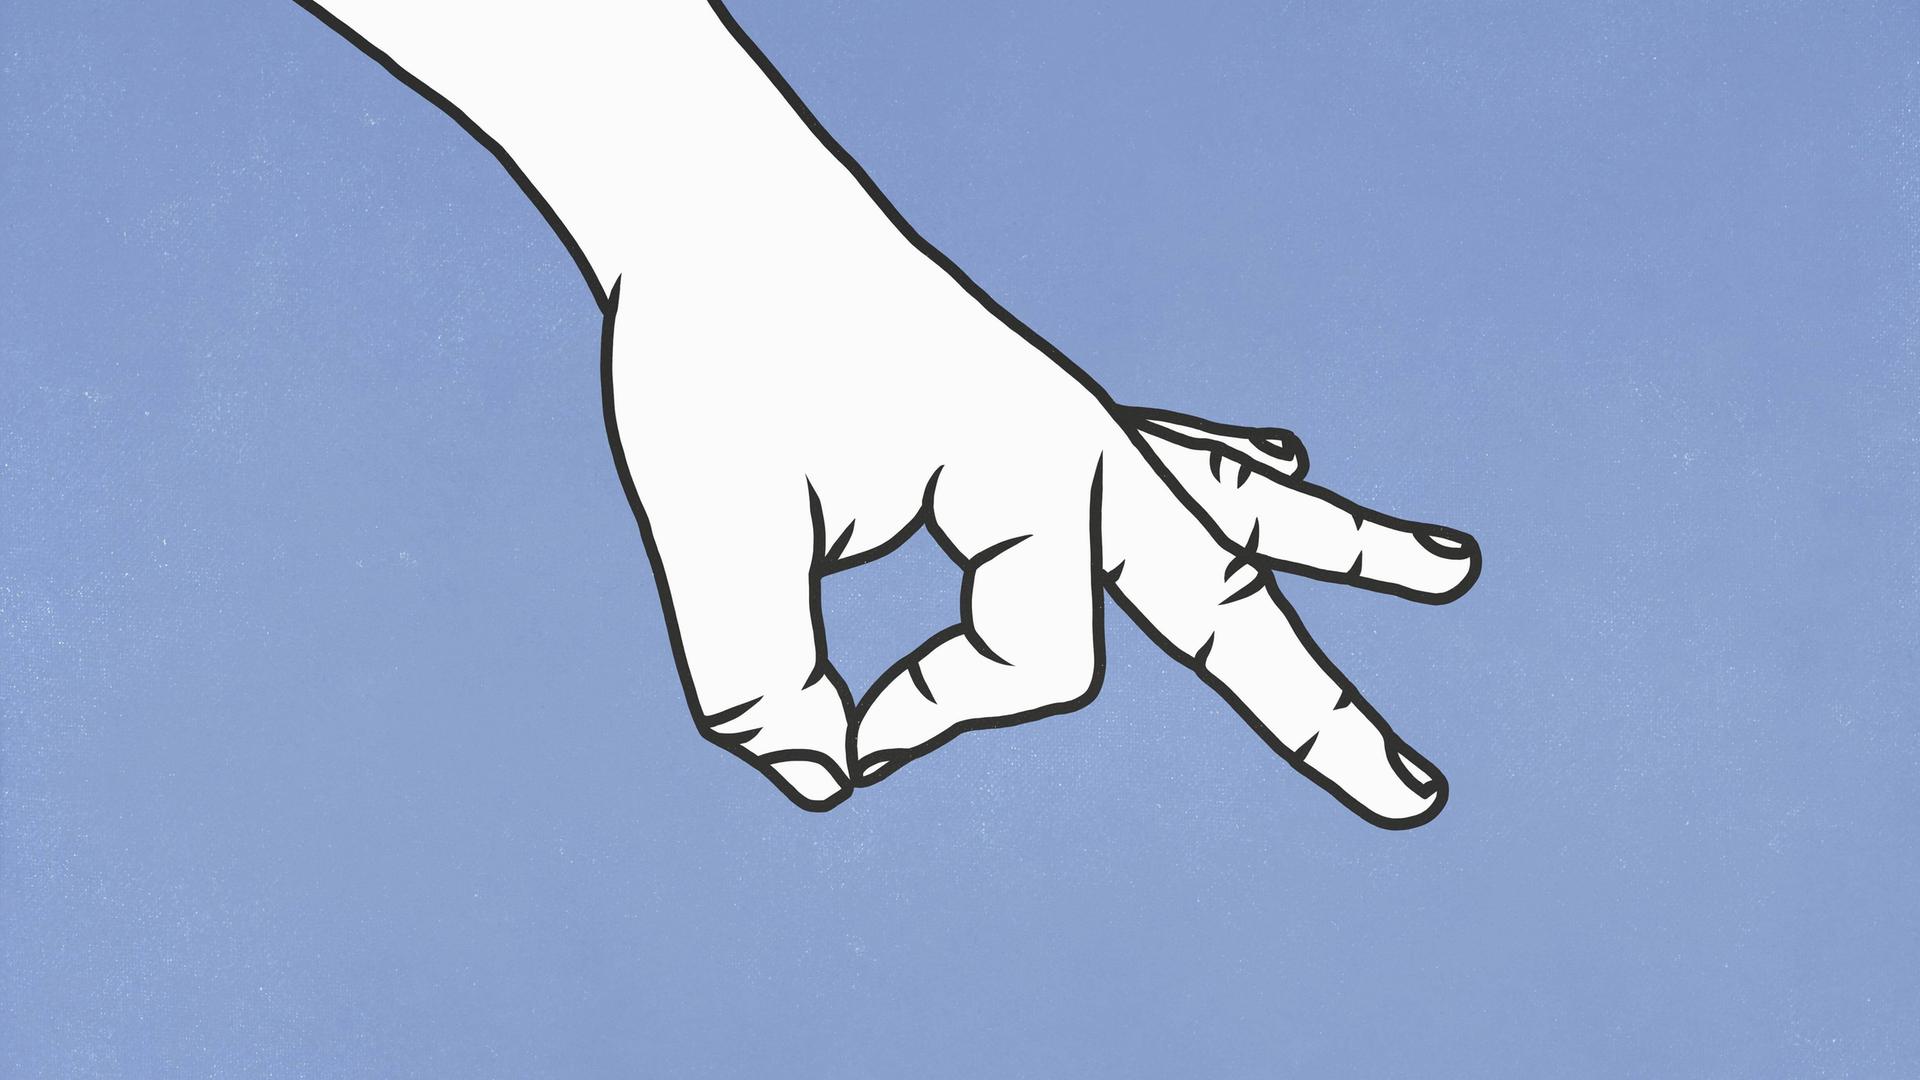 Illustration einer Hand die in Gebärdensprache "okay" zeigt